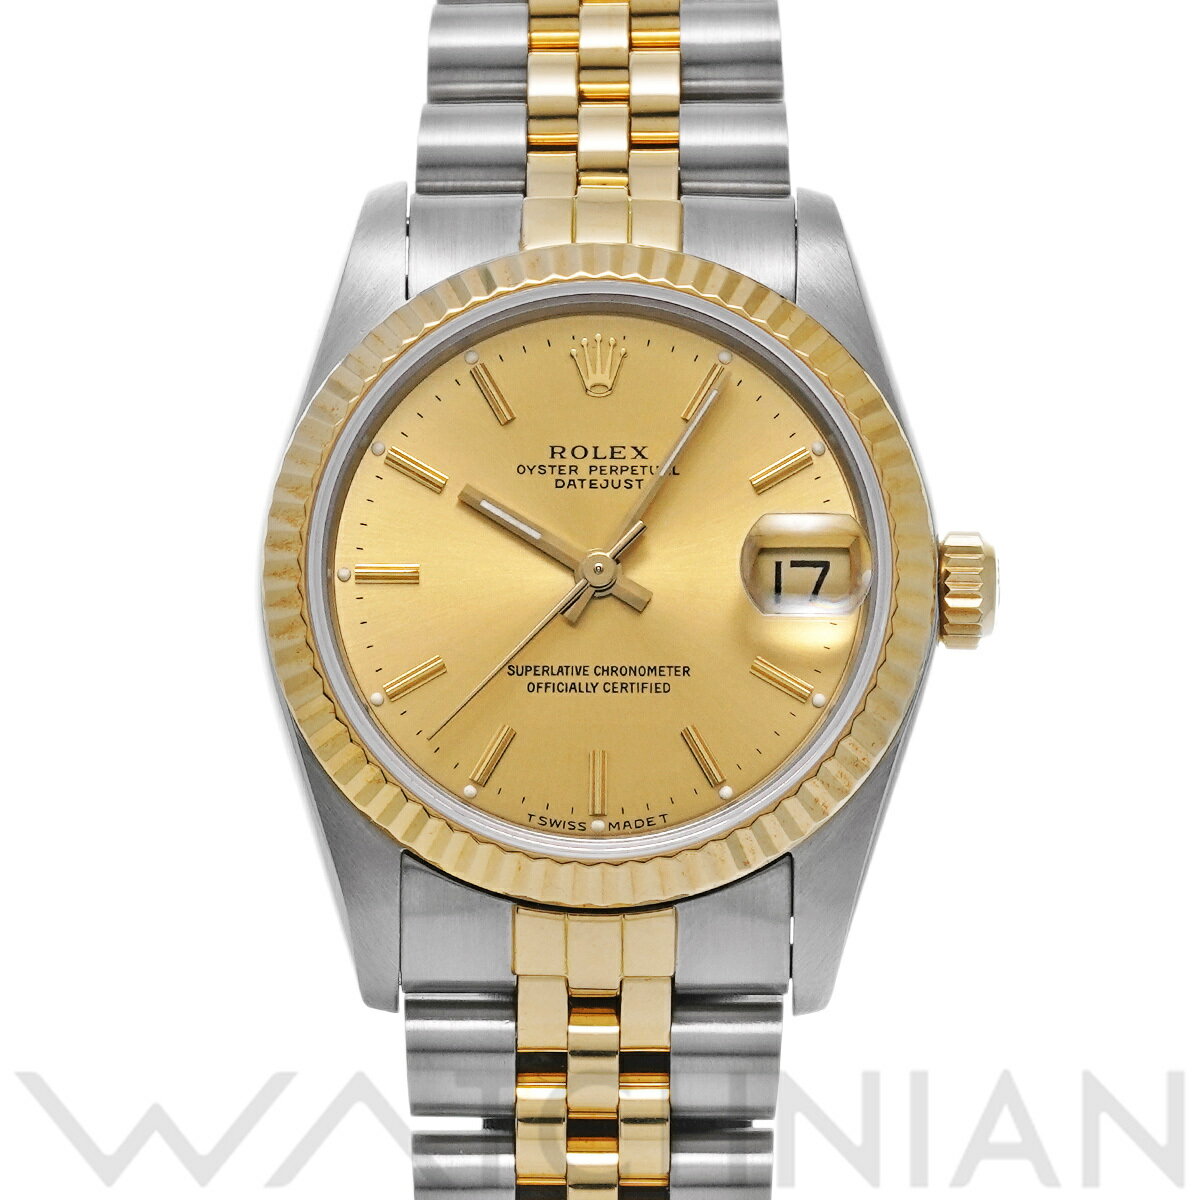  ロレックス ROLEX デイトジャスト 68273 R番(1987年頃製造) シャンパン ユニセックス 腕時計 ロレックス 時計 高級腕時計 ブランド